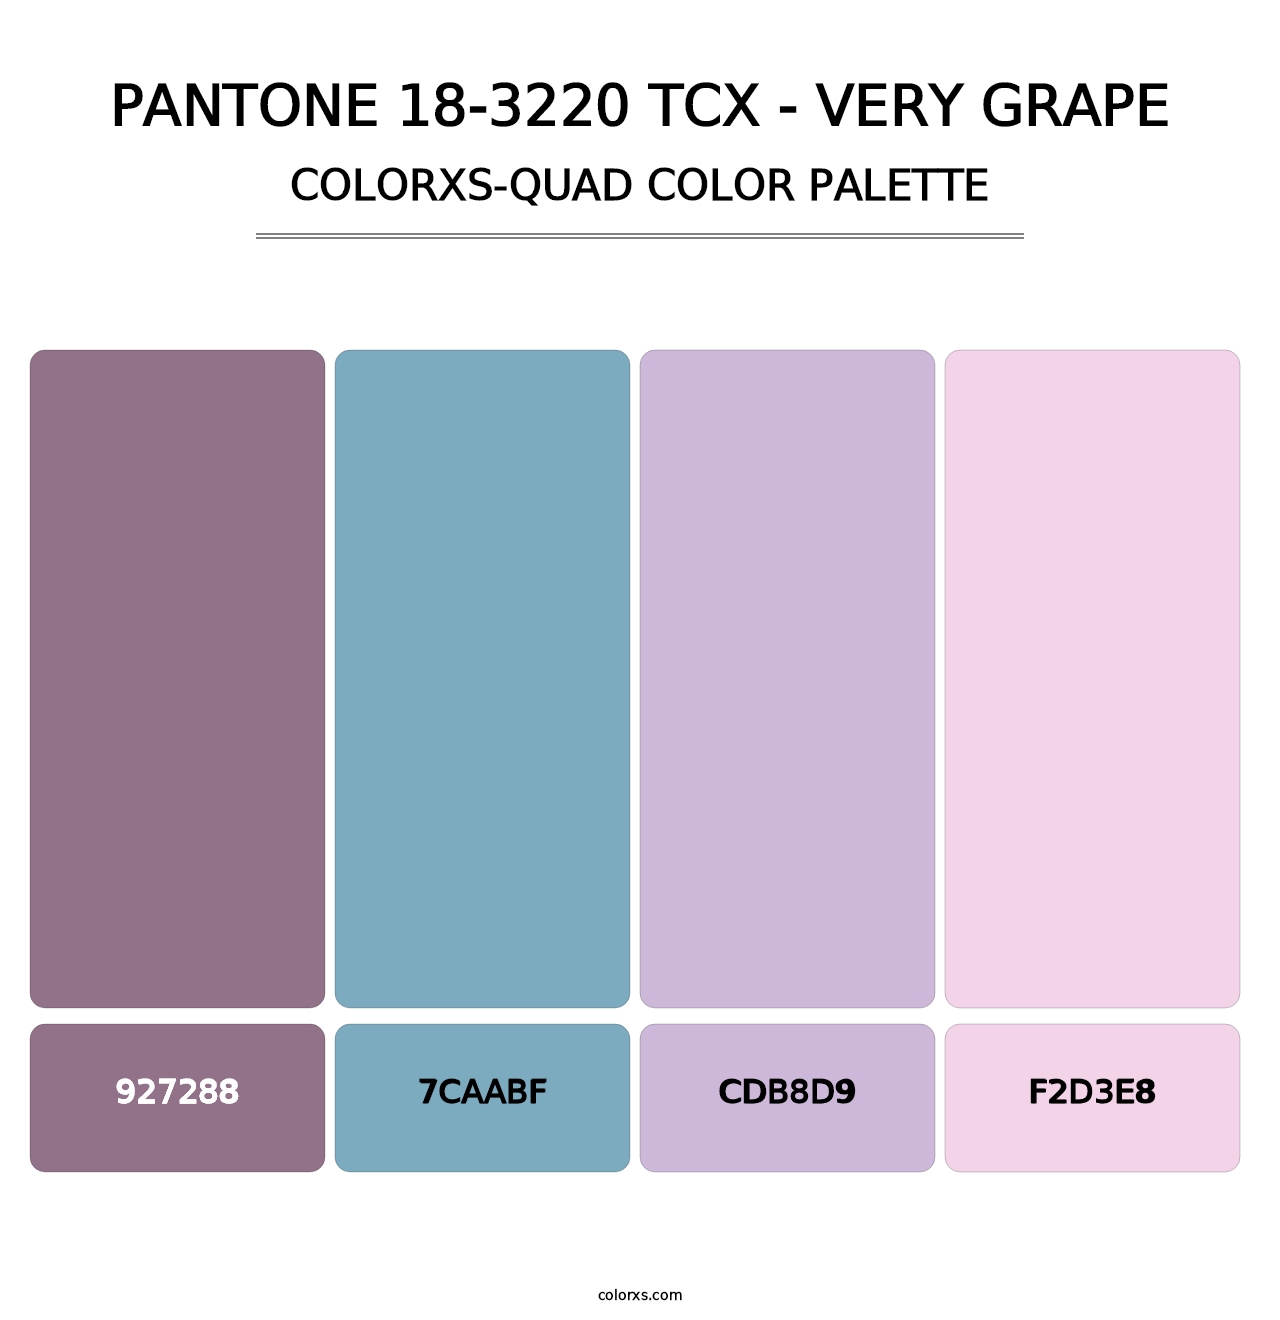 PANTONE 18-3220 TCX - Very Grape - Colorxs Quad Palette